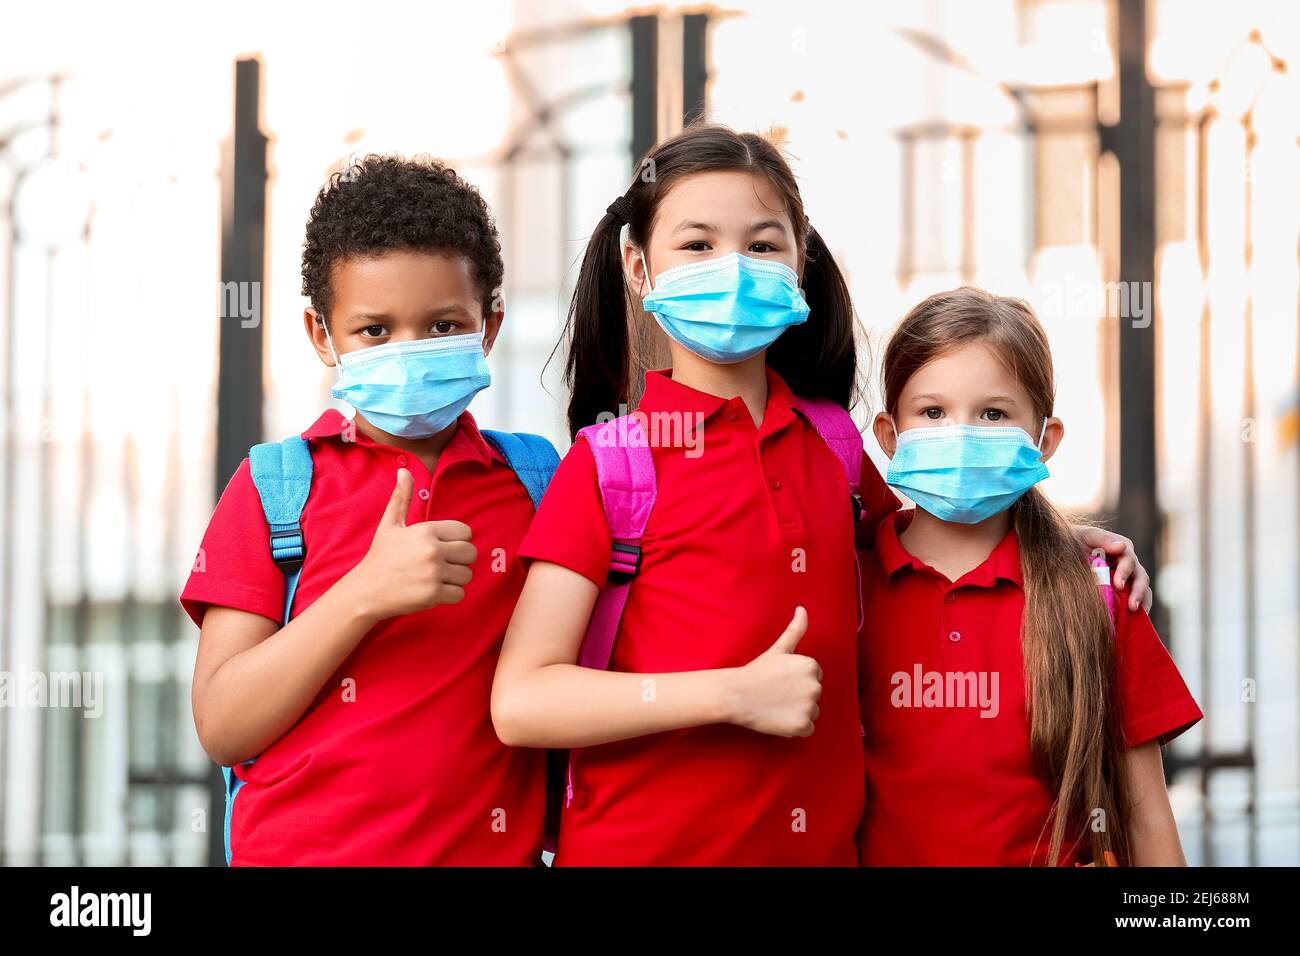 Petits élèves dans des masques médicaux montrant le pouce vers le haut près de l'école. Épidémie de coronavirus Banque D'Images